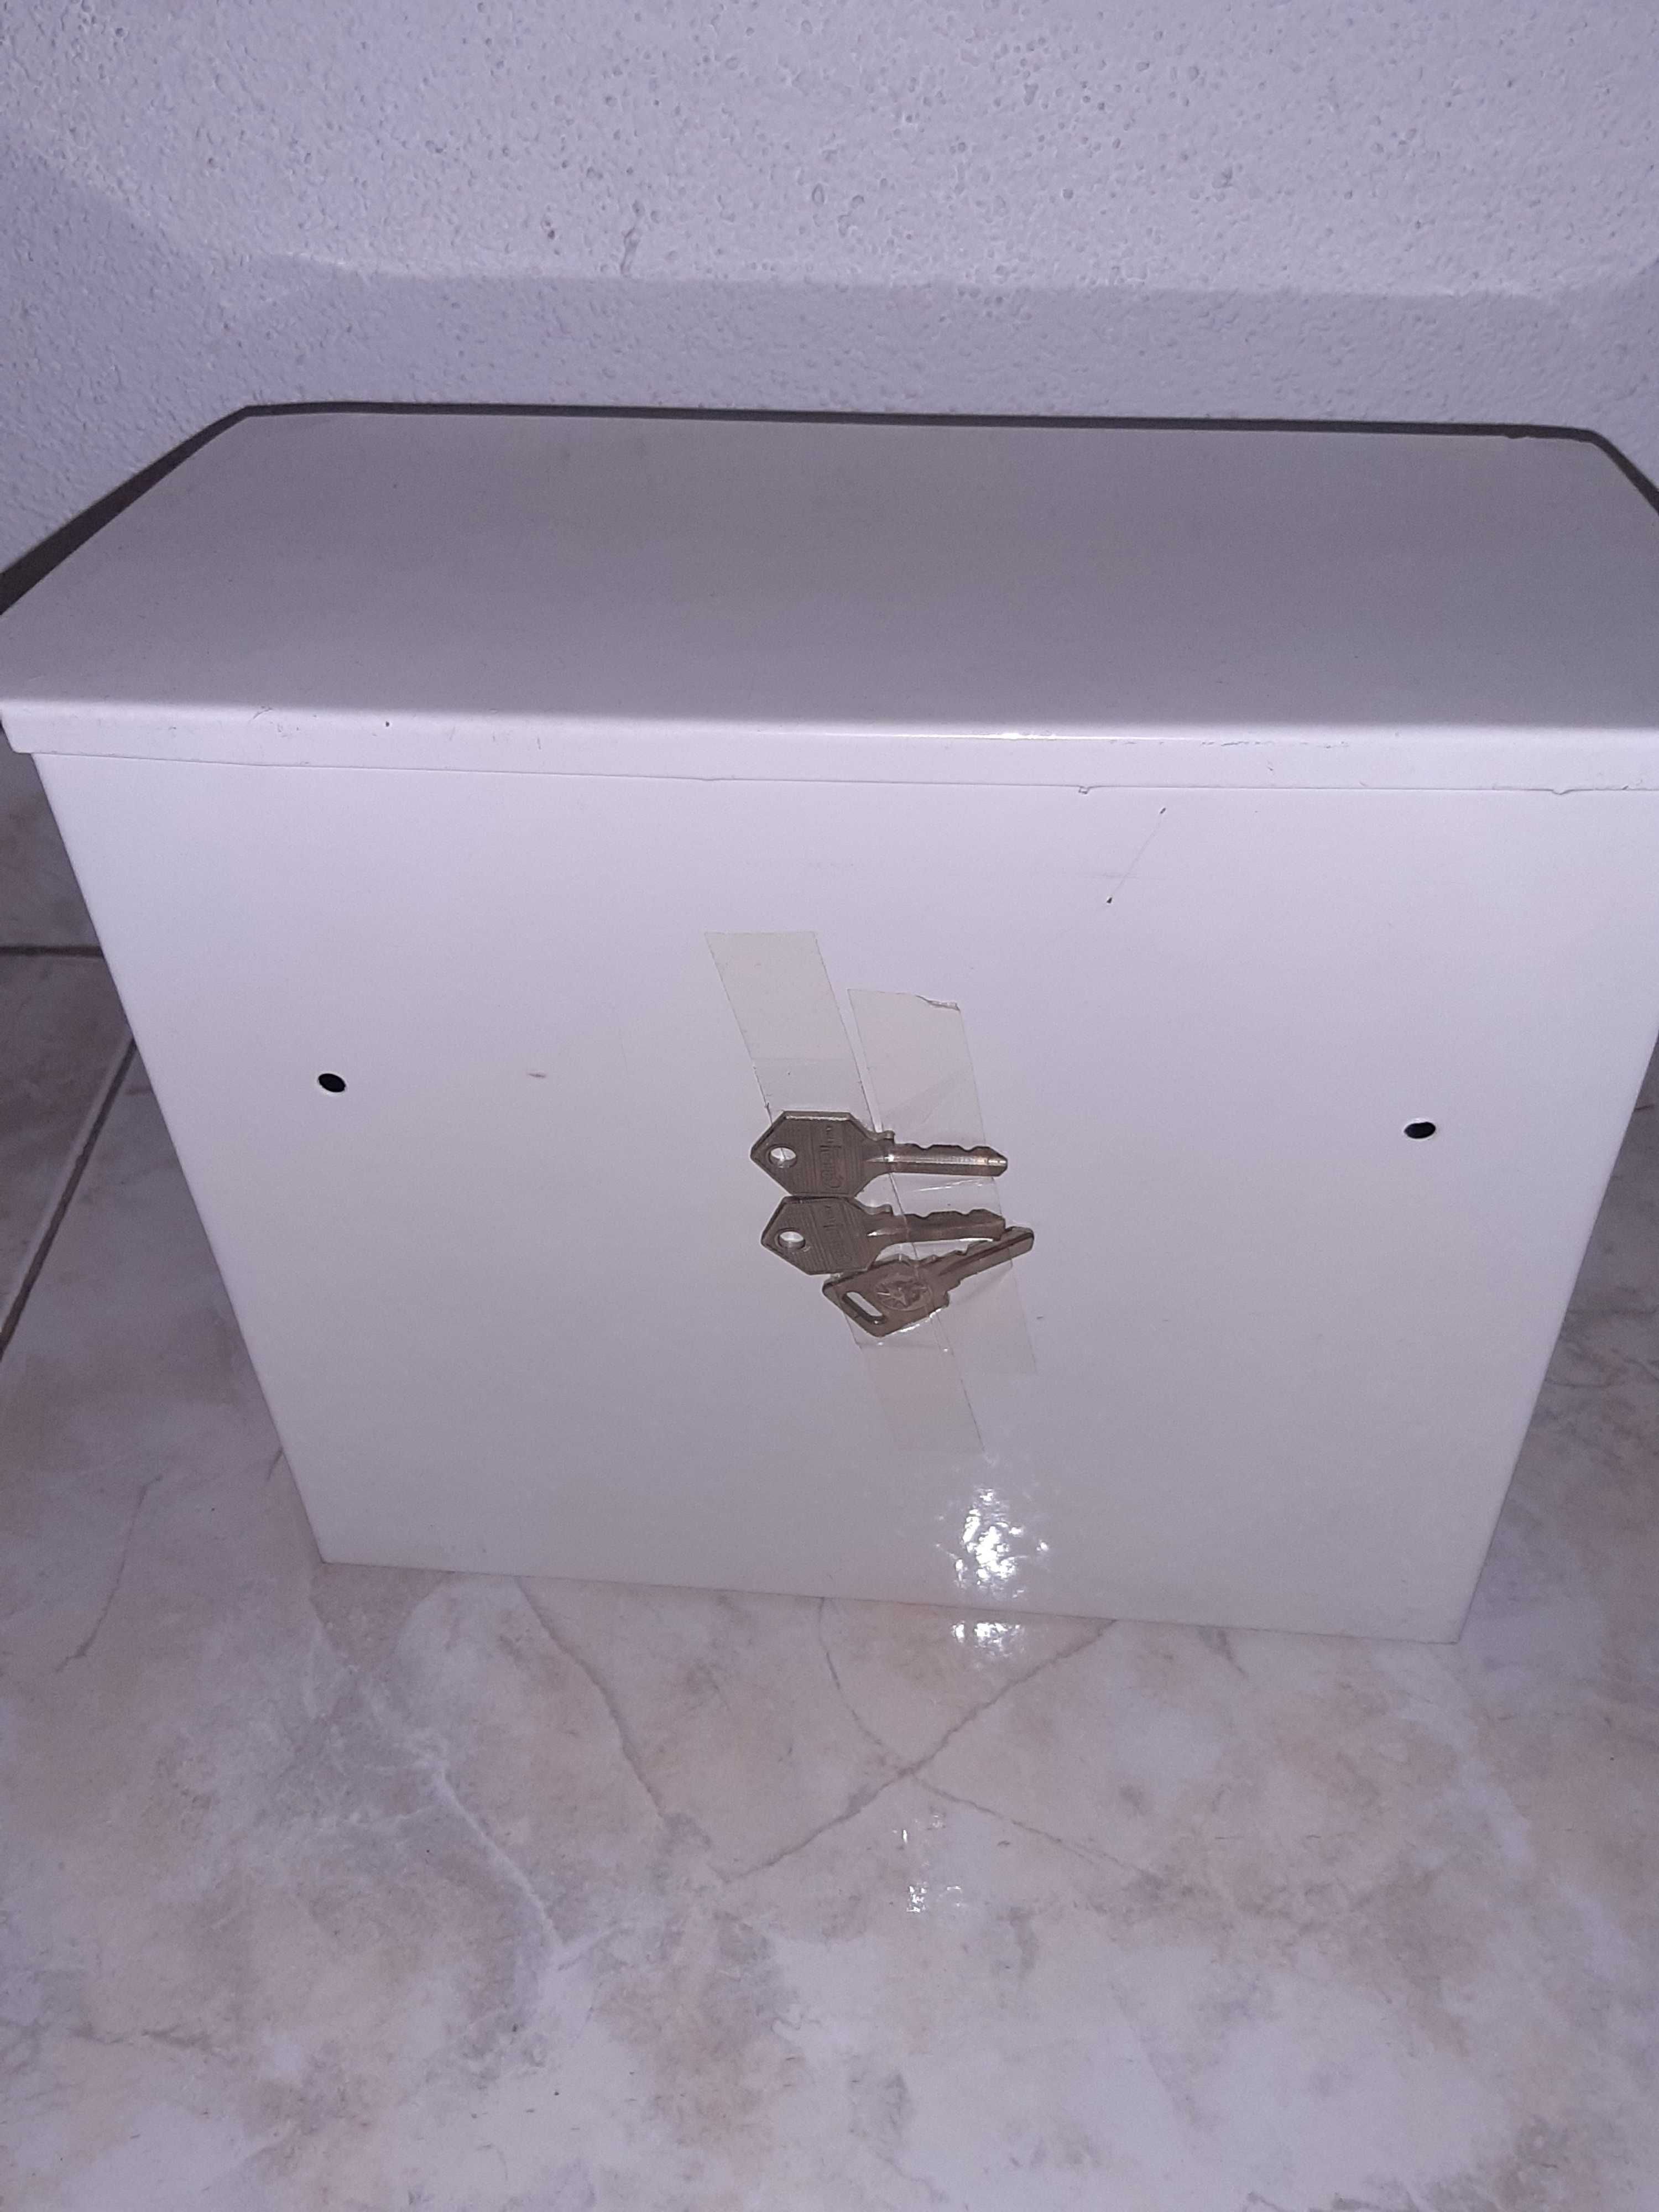 Caixa de correio em metal de cor branco